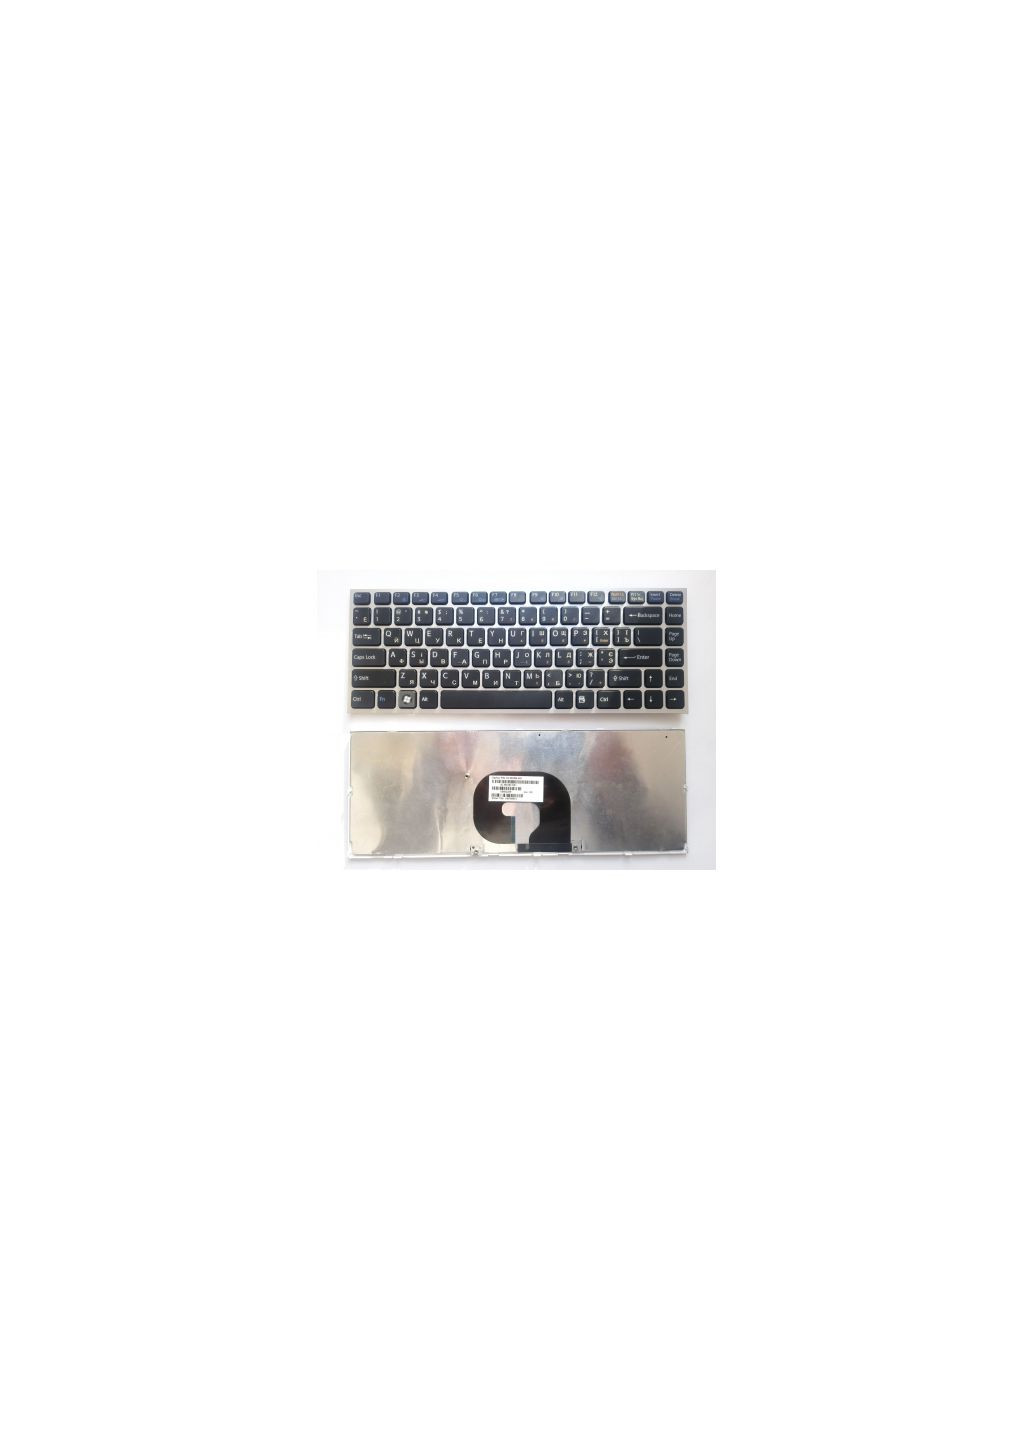 Клавиатура ноутбука VPCY черная с серебристой рамкой UA (A43441) Sony vpc-y чeрная с серебристой рамкой ua (276707377)